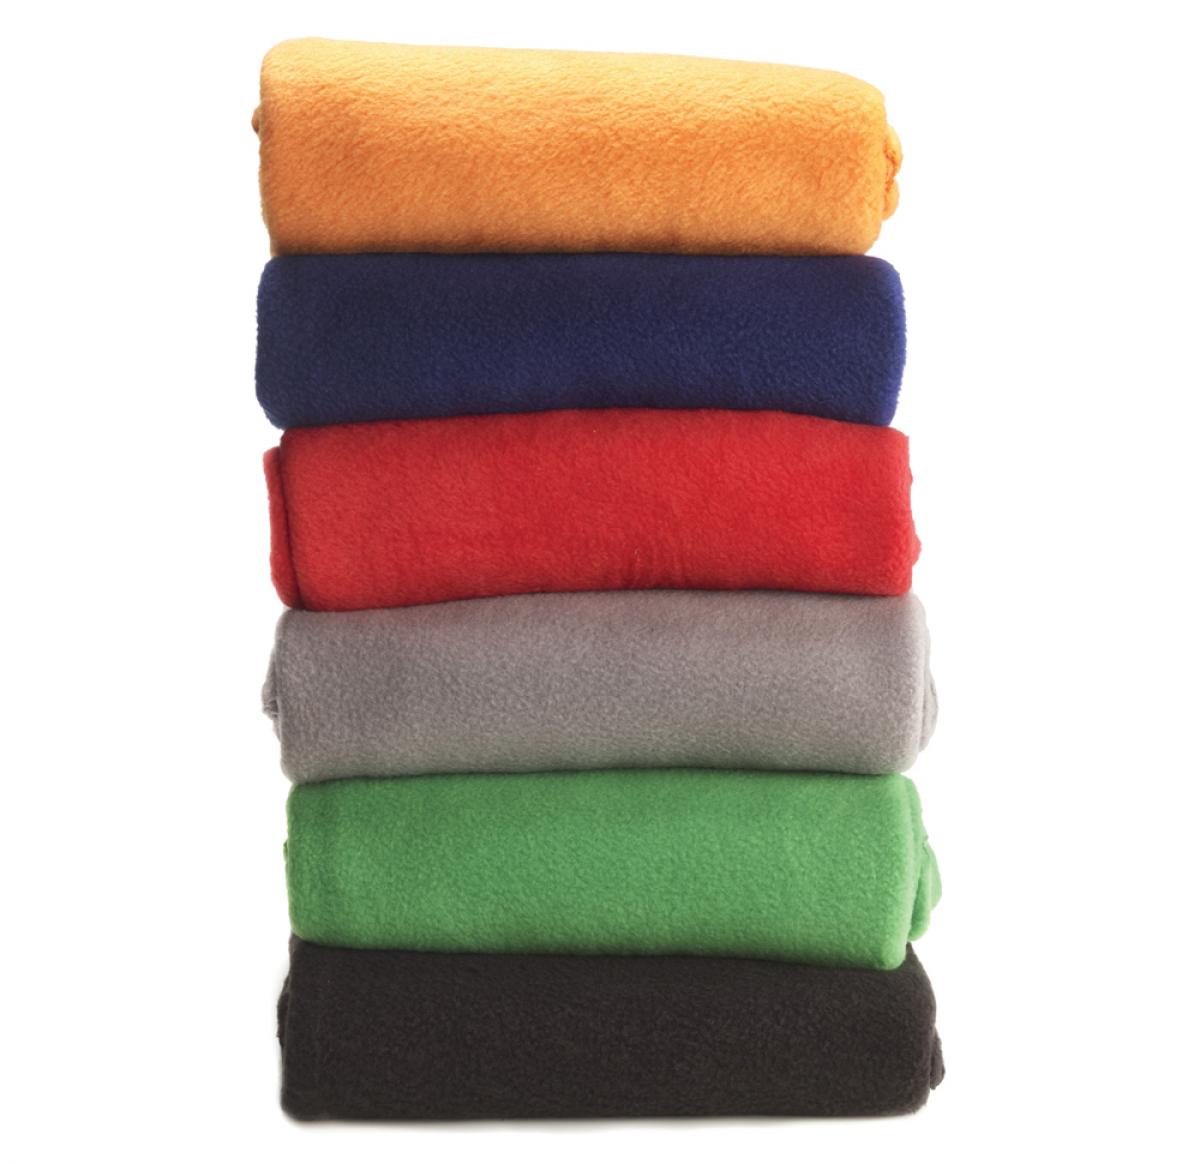 Promotional Fleece Blankets / Outdoor Blankets